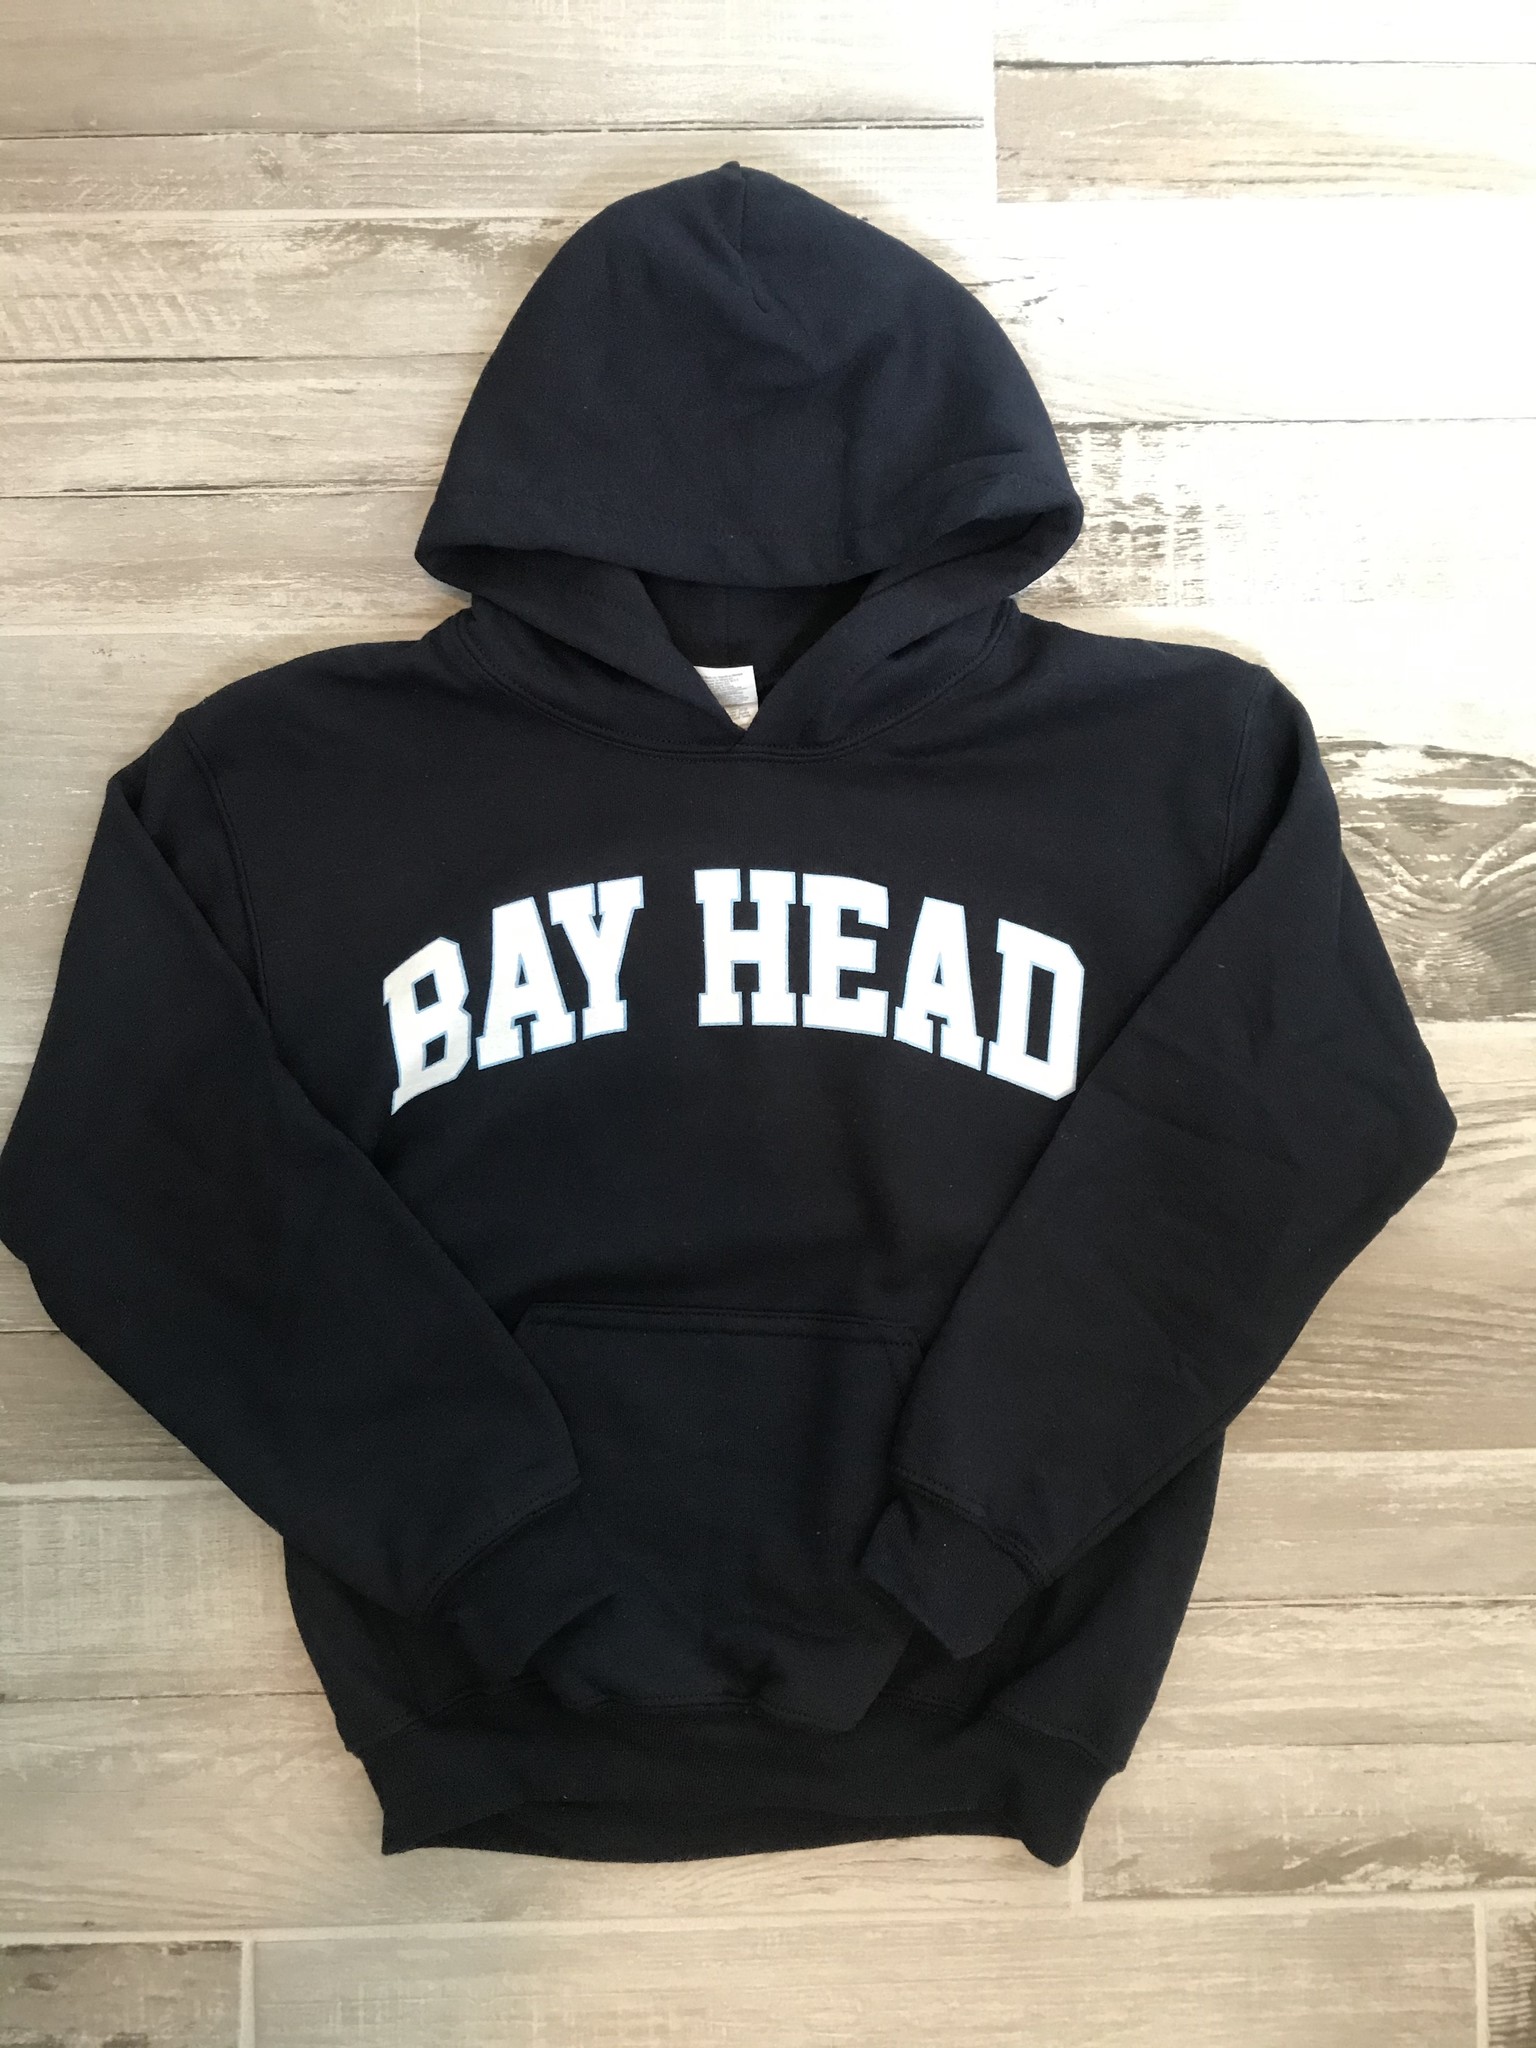 Bay Head Bay Head Nautical - Kids Hoody Sweatshirt